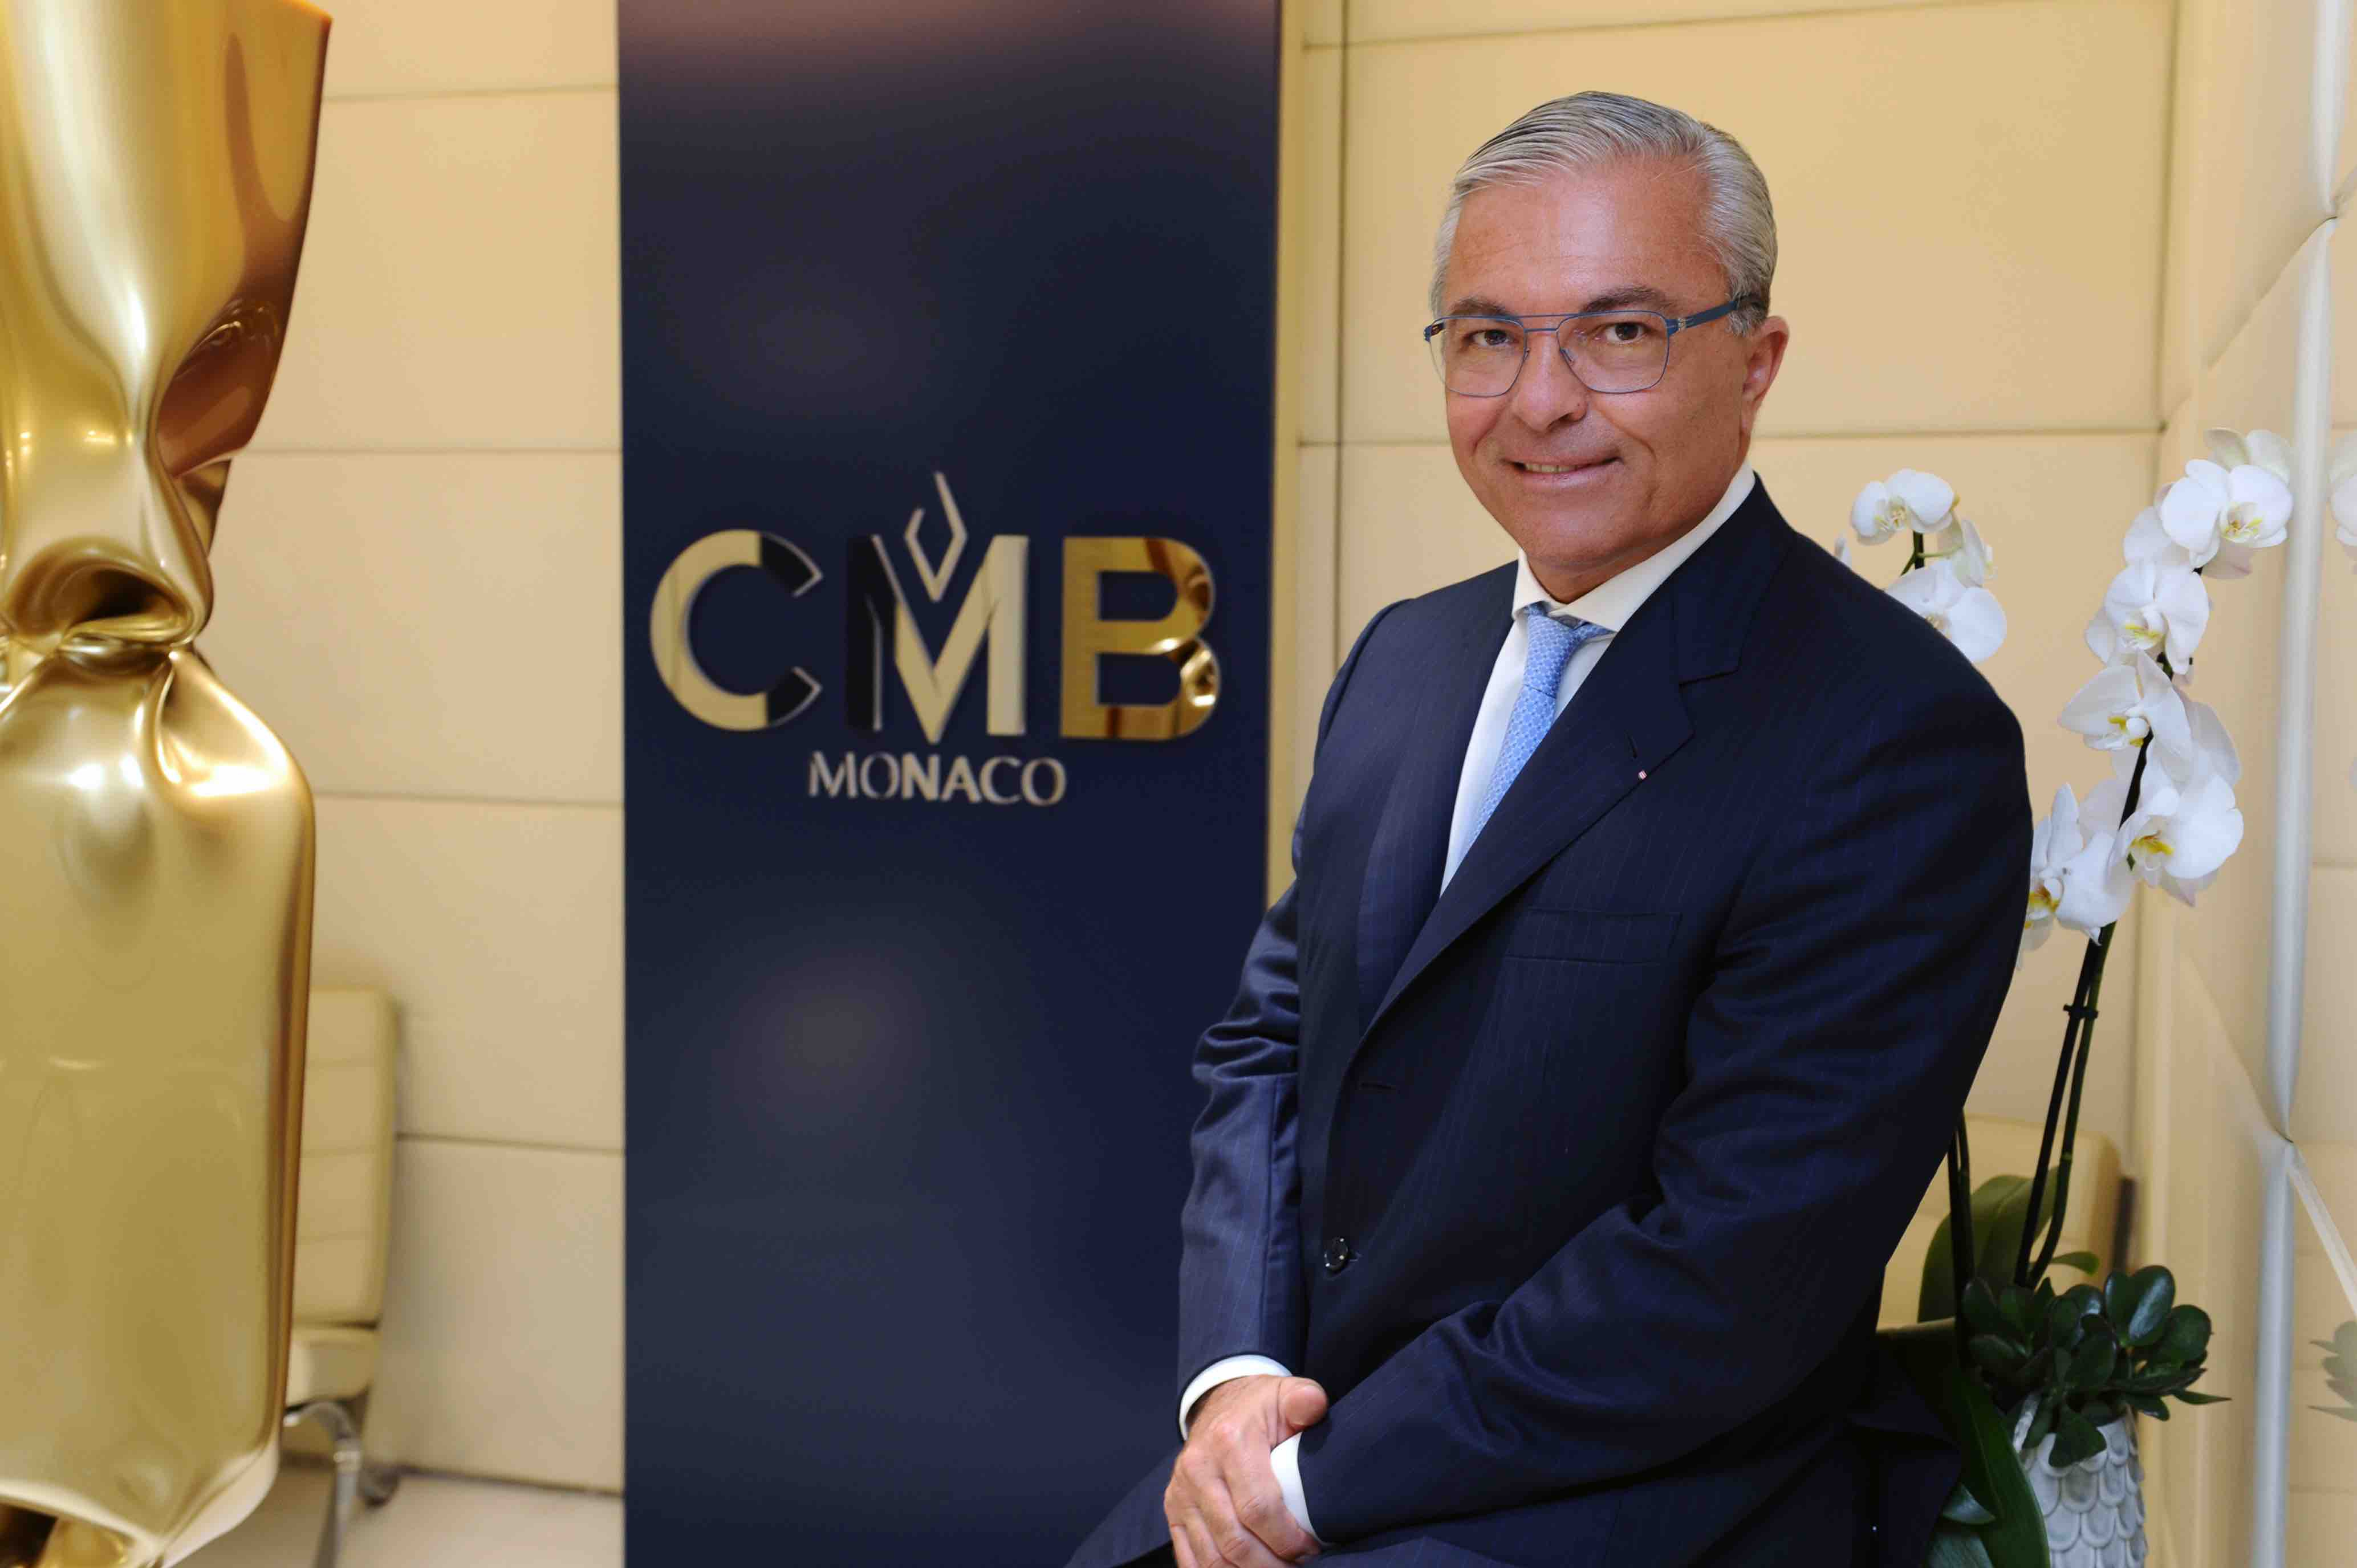 CMB Monaco: частный банк в Княжестве к услугам русскоговорящих